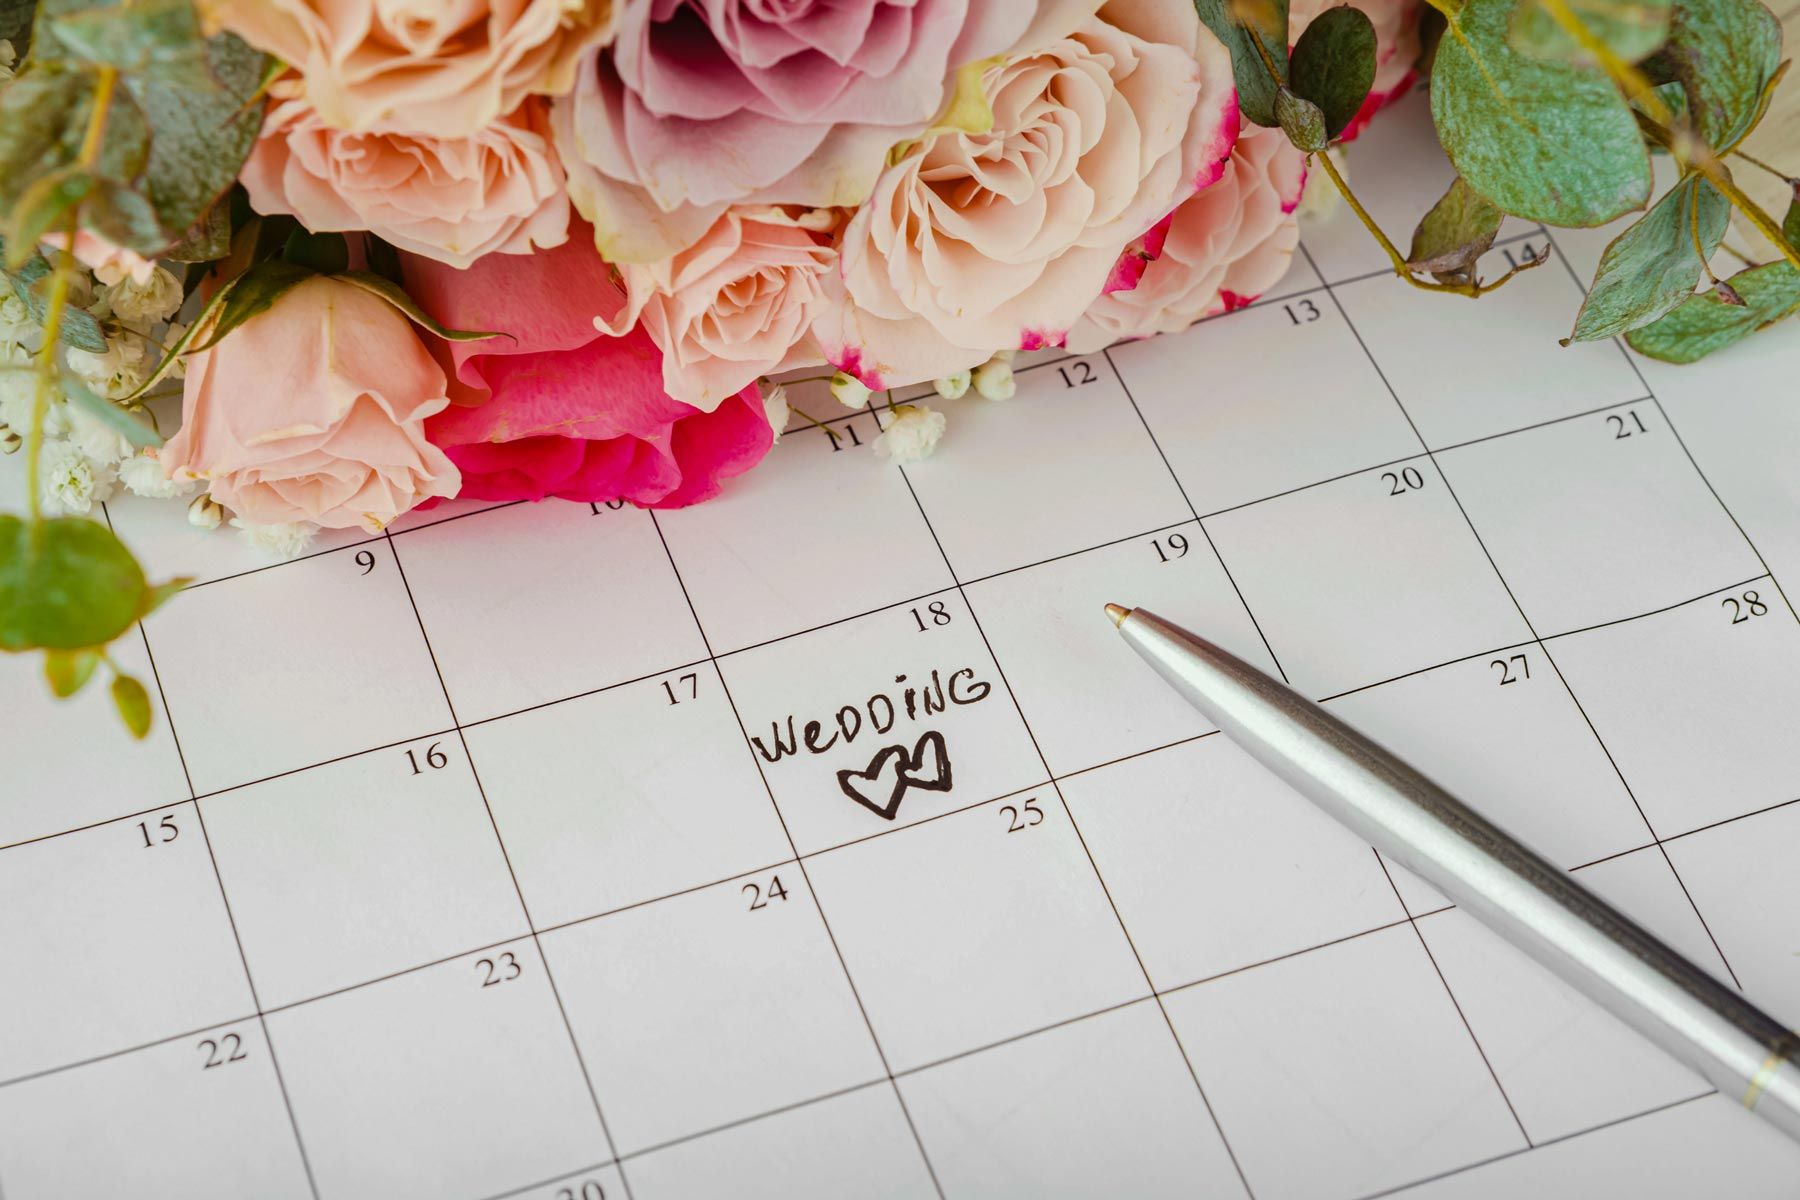 Calendar Wedding Date Reservation